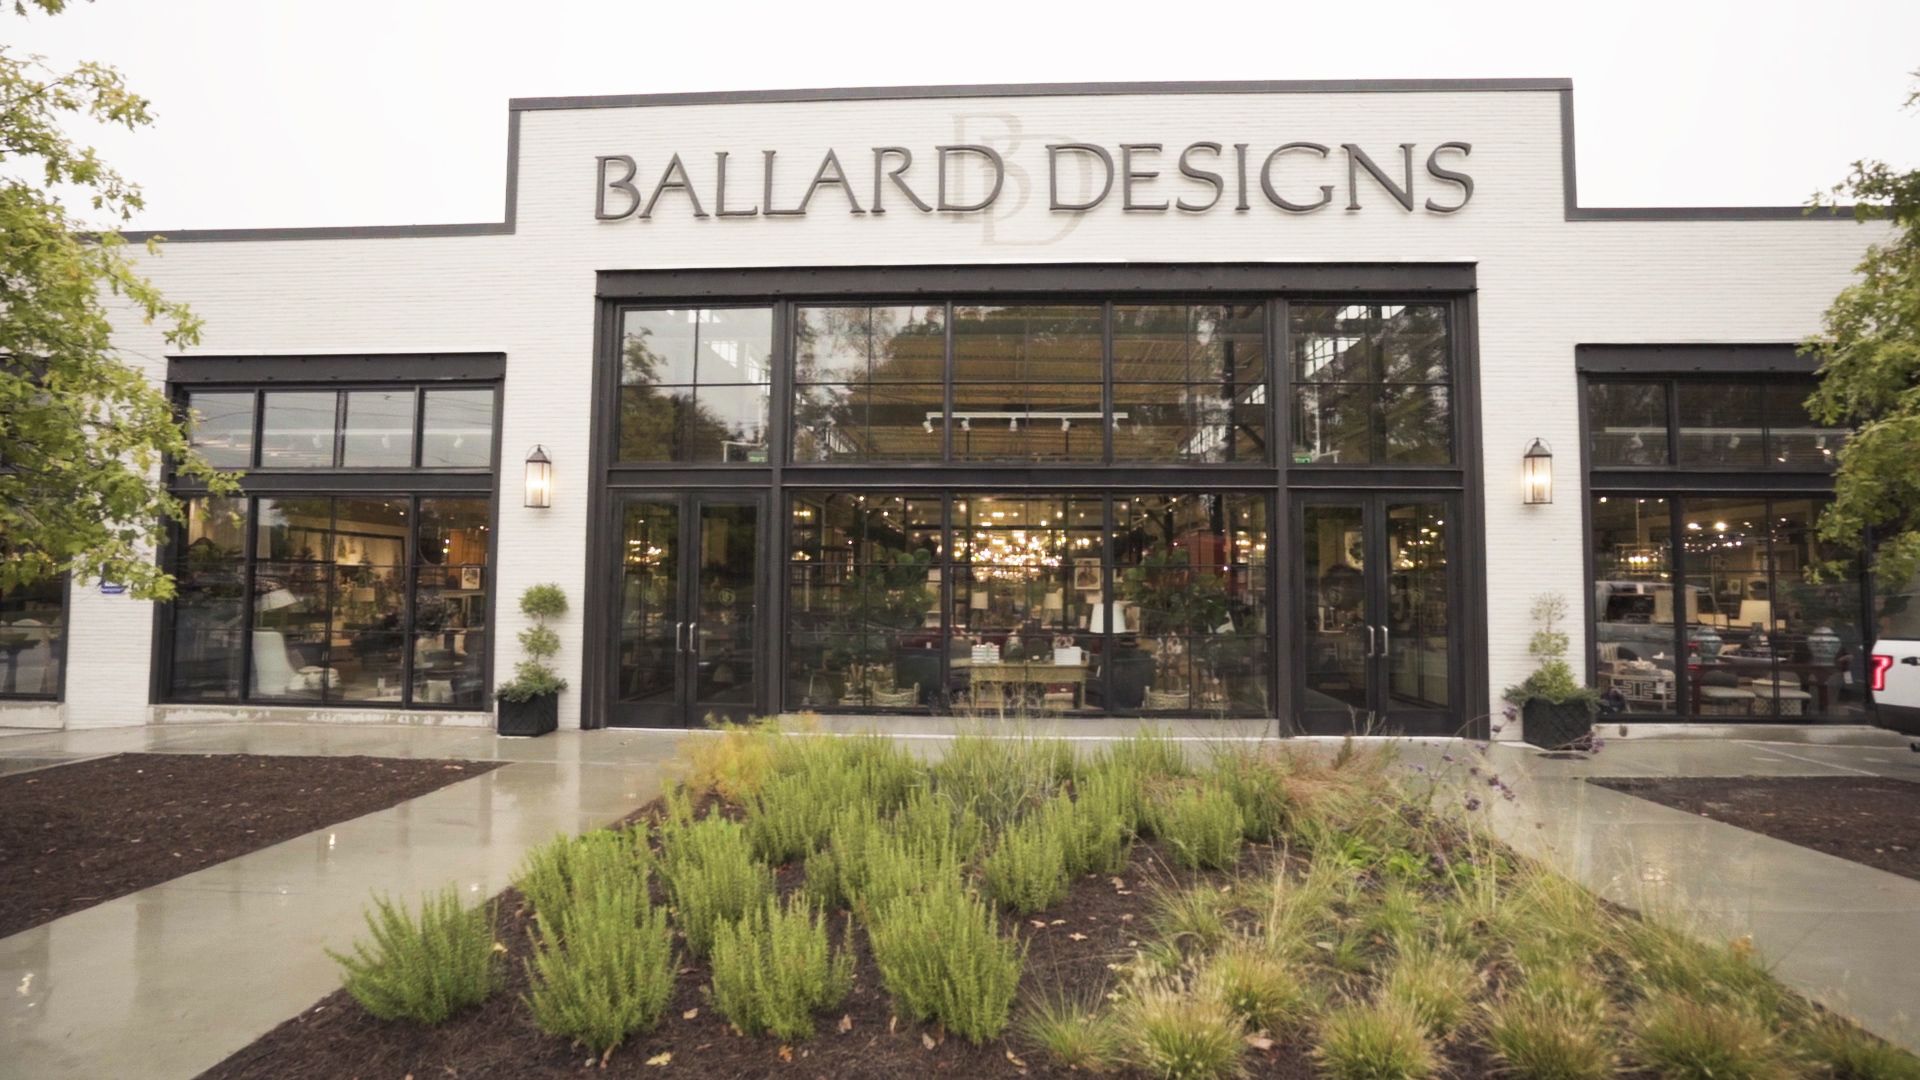 Ballard Outdoor Shop & Stroll starts tomorrow – My Ballard